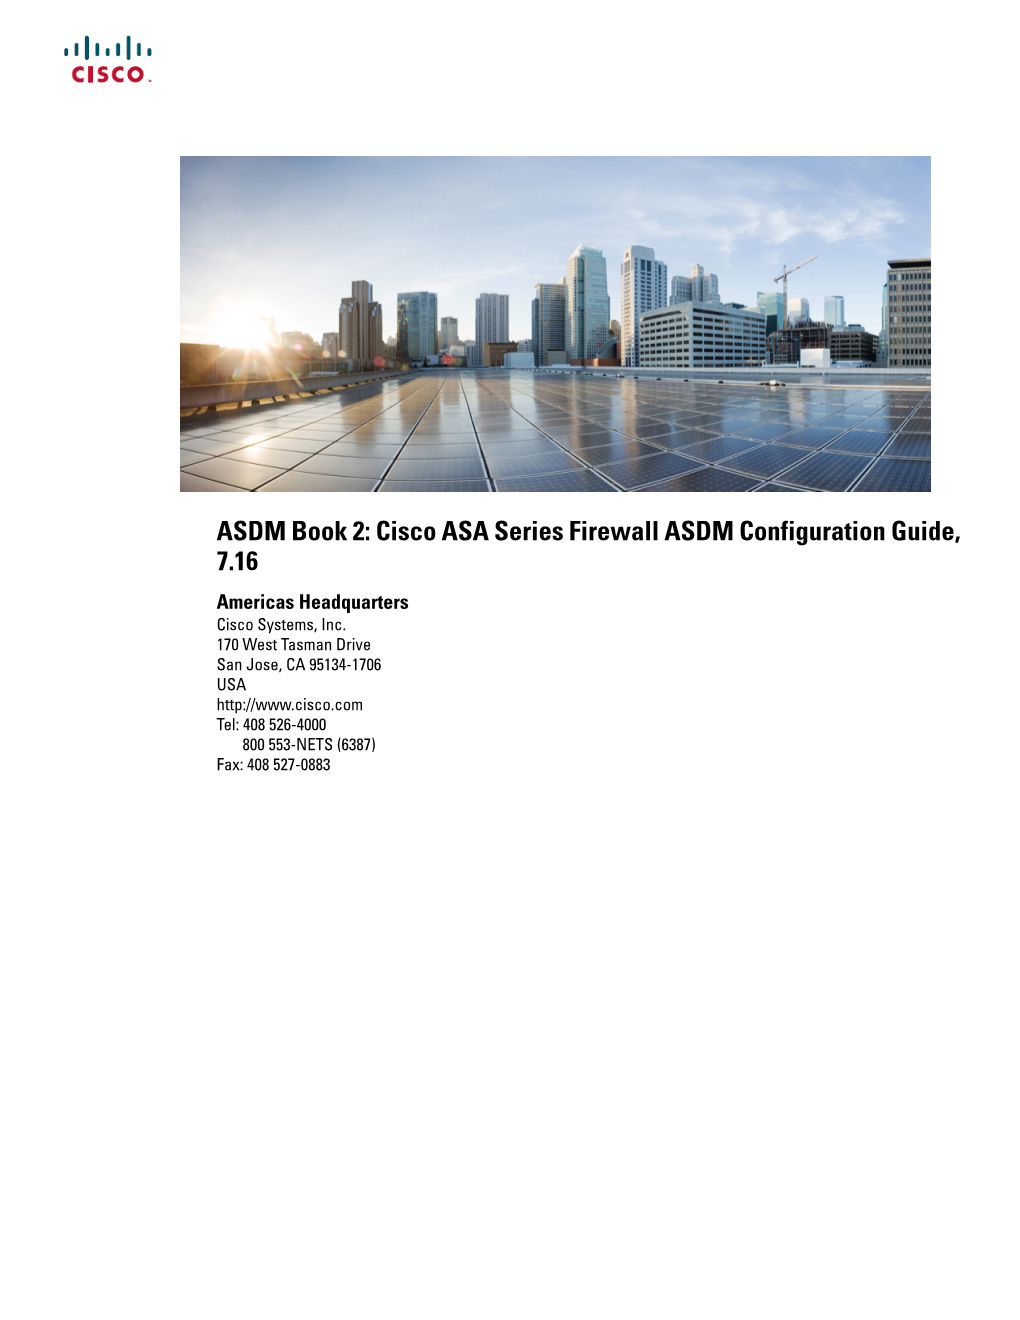 ASDM Book 2: Cisco ASA Series Firewall ASDM Configuration Guide, 7.16 Americas Headquarters Cisco Systems, Inc